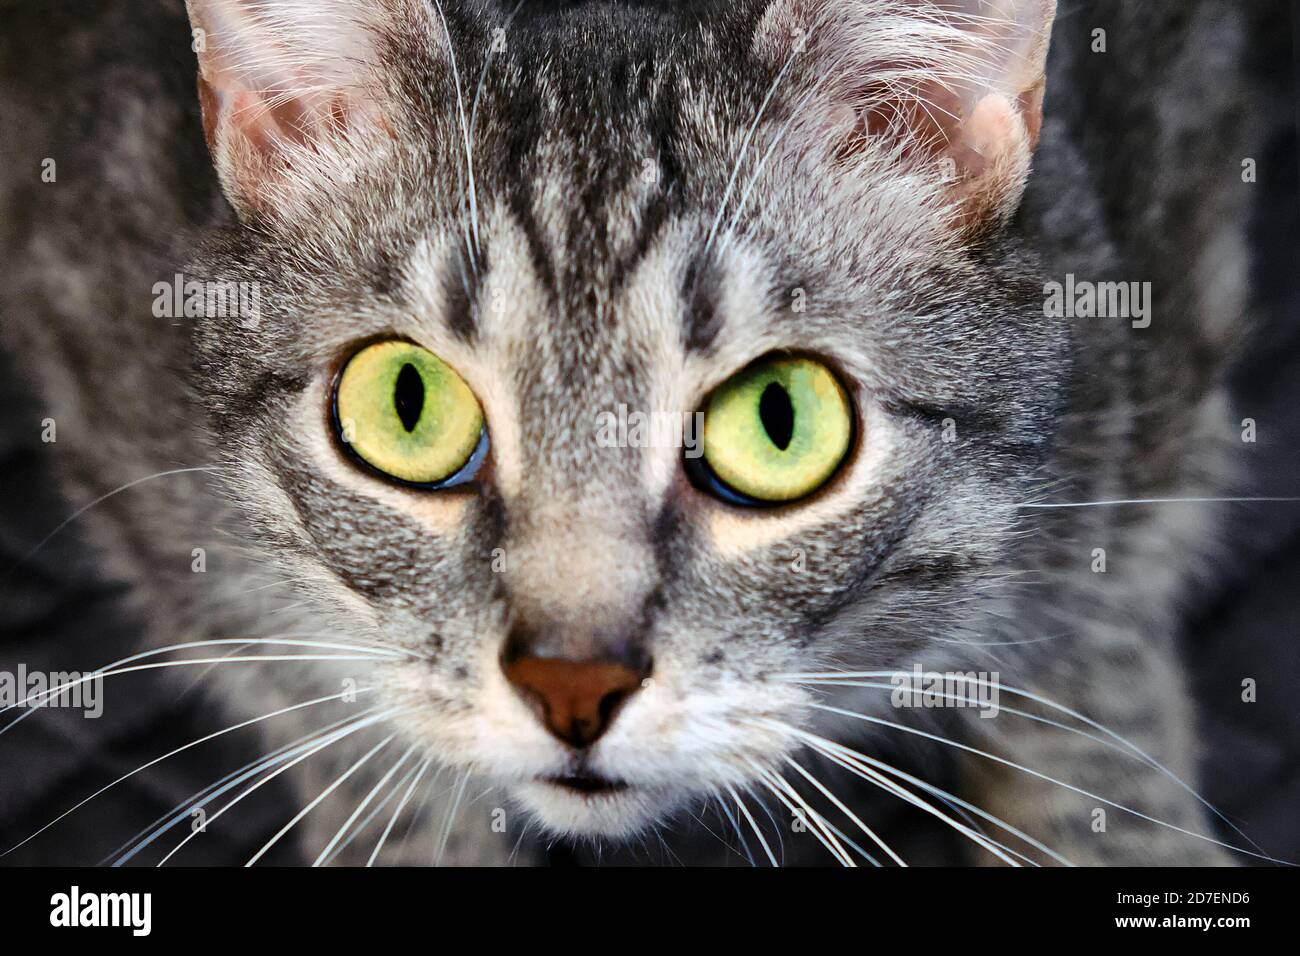 Cat vous regarde dans les yeux avec une question stupide. Demandez un animal de compagnie dans les grands yeux verts. Un chat affamé qui demande de la nourriture chez les humains. Le chat sans domicile demande à choisir Banque D'Images